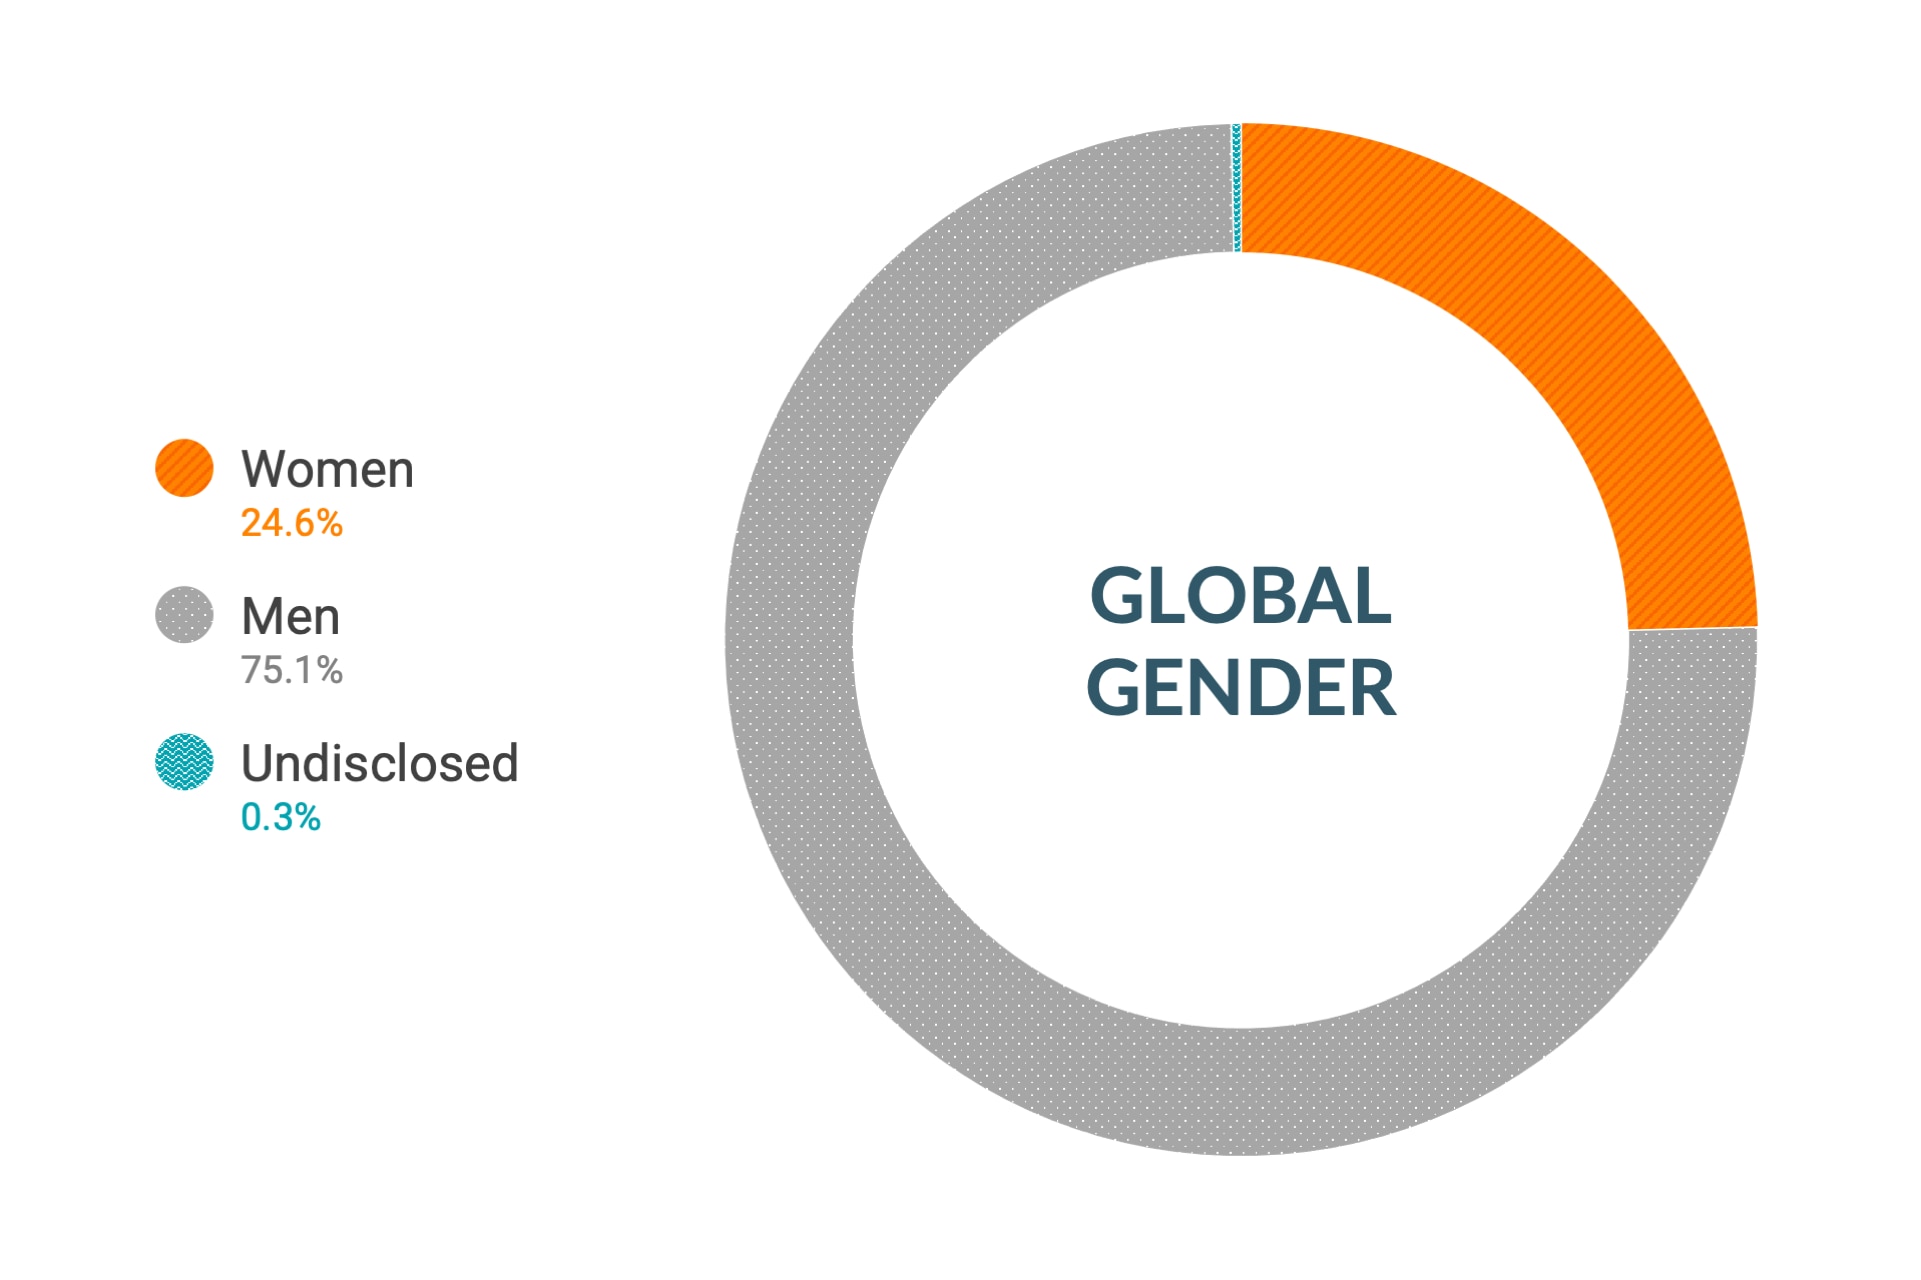 Cloudera のダイバーシティとインクルージョンデータ (世界全体の性別比): 女性24.6%、男性75.1%、回答なし0.3%